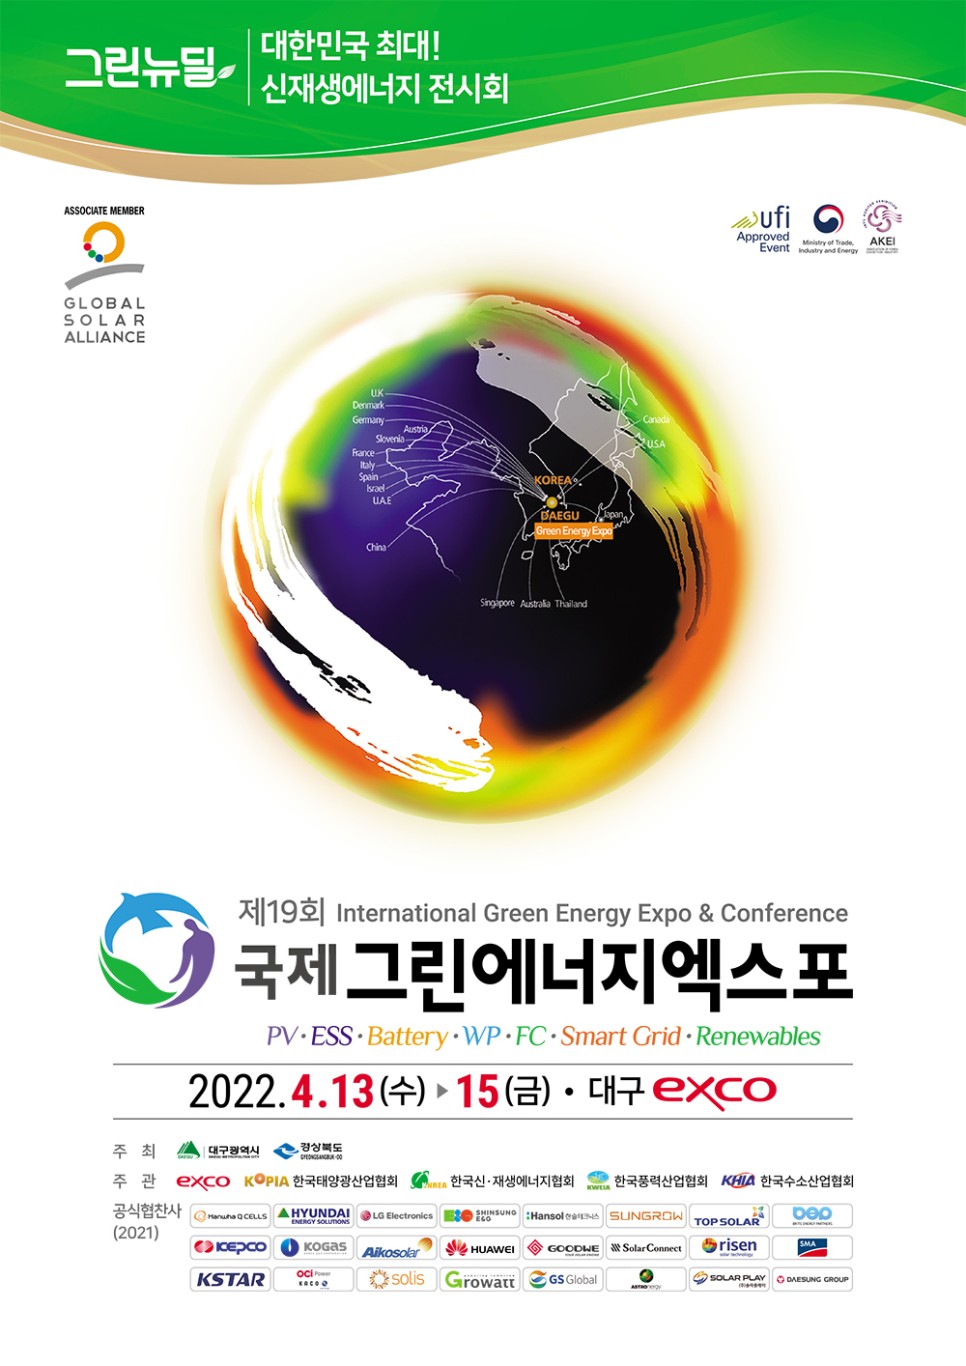 태양광 전시회의 모든것 ! 국제그린에너지엑스포 2022 개최